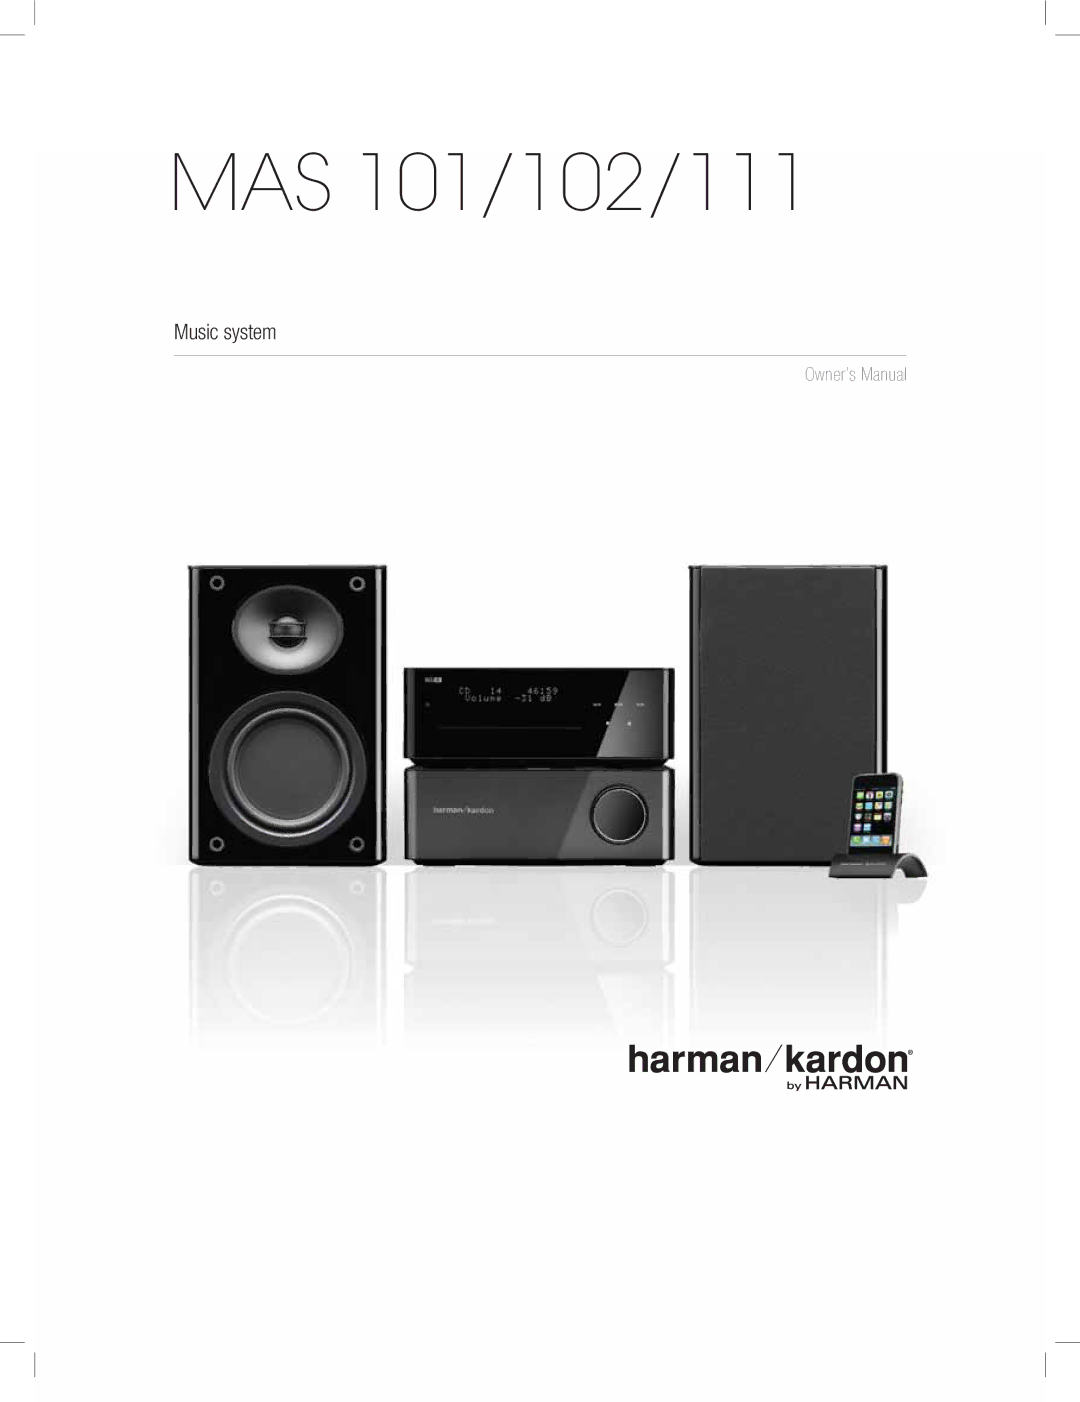 Harman-Kardon MAS 111, MAS 102 owner manual MAS 101/102/111 